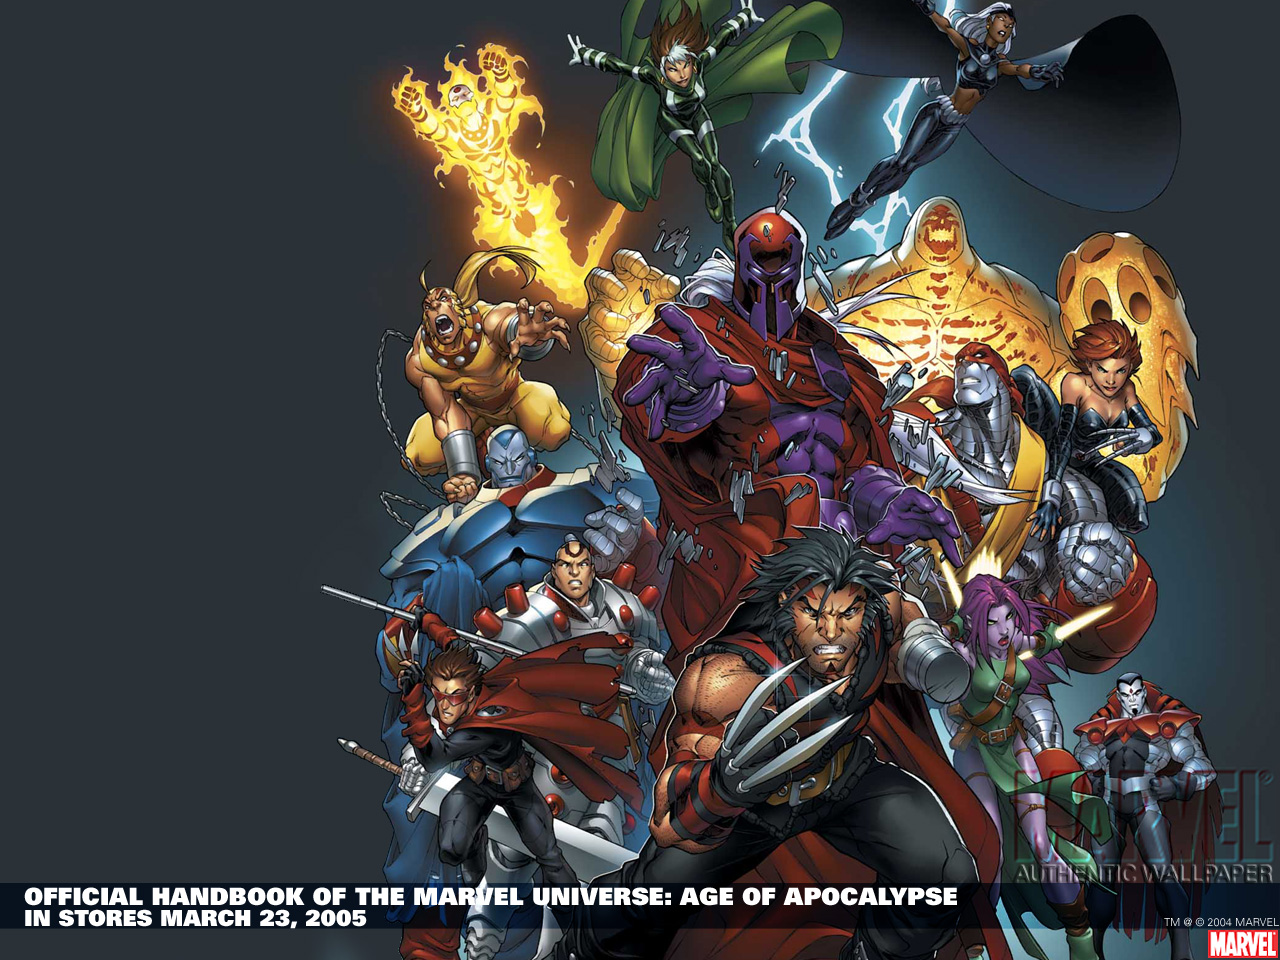 marvel heroes hd wallpaper,gioco di avventura e azione,personaggio fittizio,gioco per pc,cg artwork,giochi